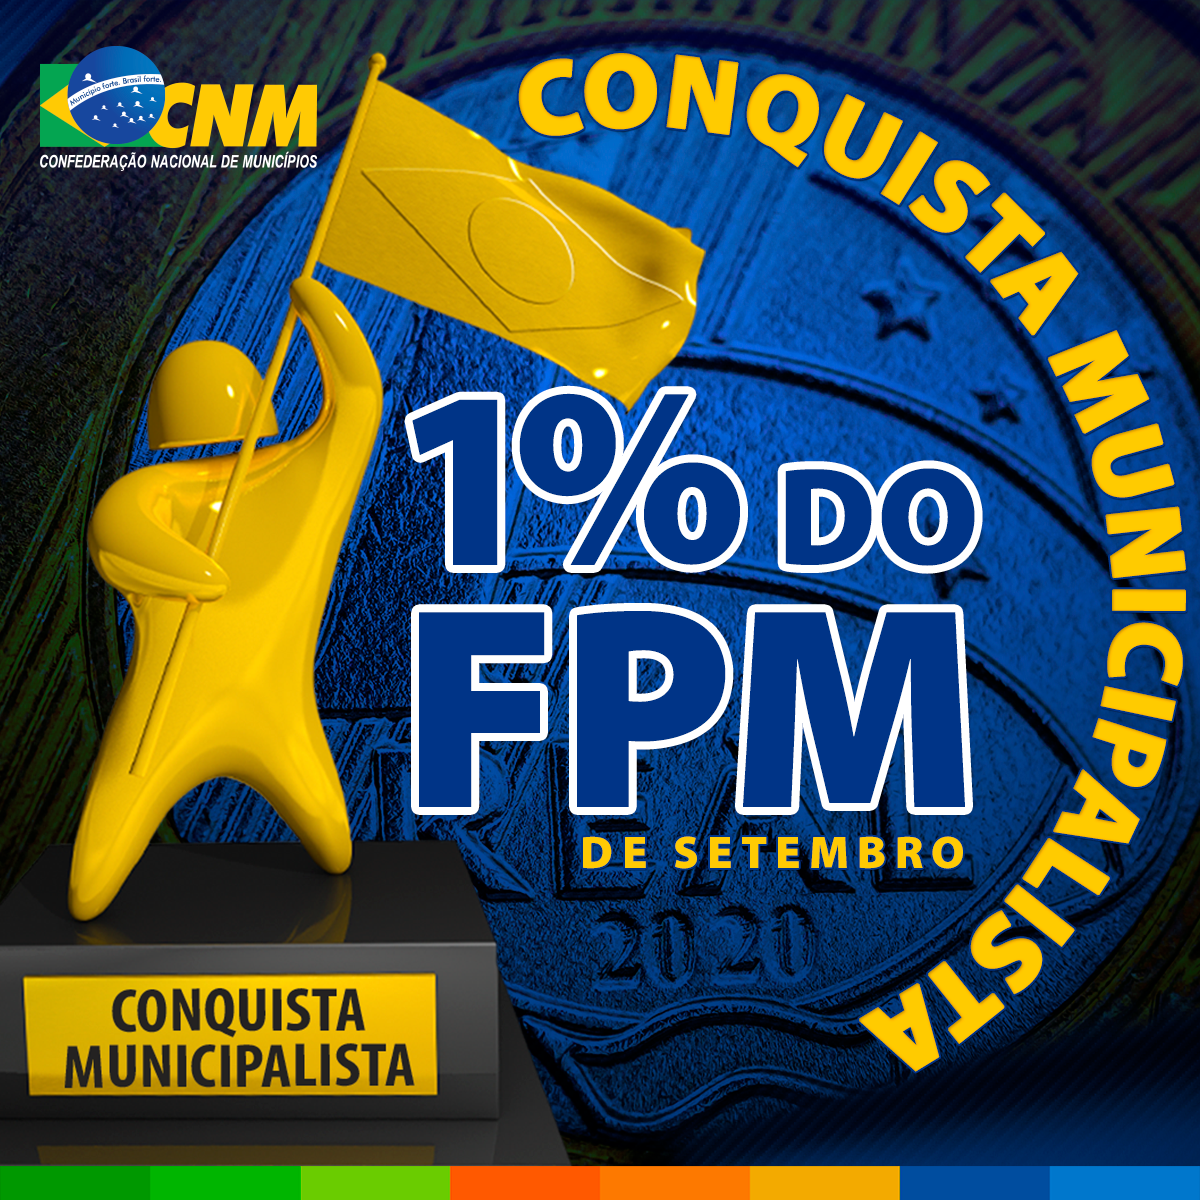 Conquista histrica, aprovado adicional de 1% do FPM em setembro - CNM comemora e divulga estimativas